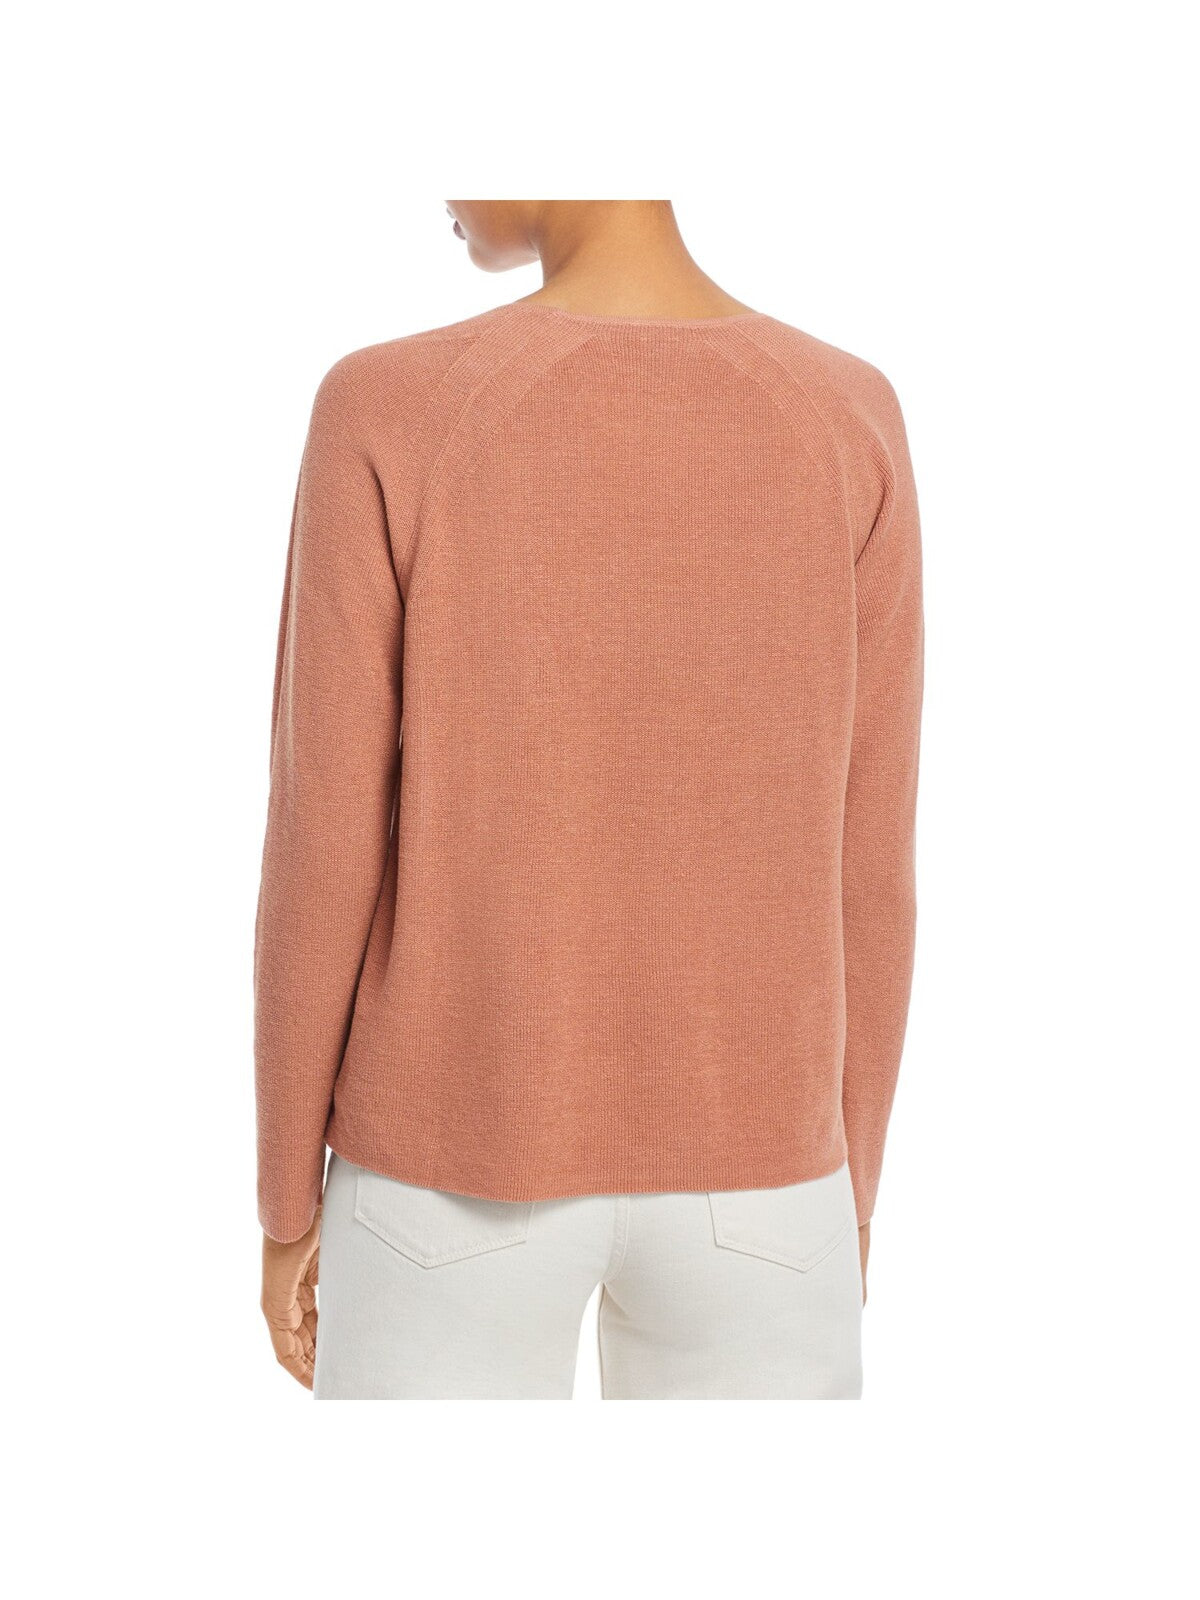 EILEEN FISHER Womens Orange Cotton Blend Round Neck Sweater Plus 1X